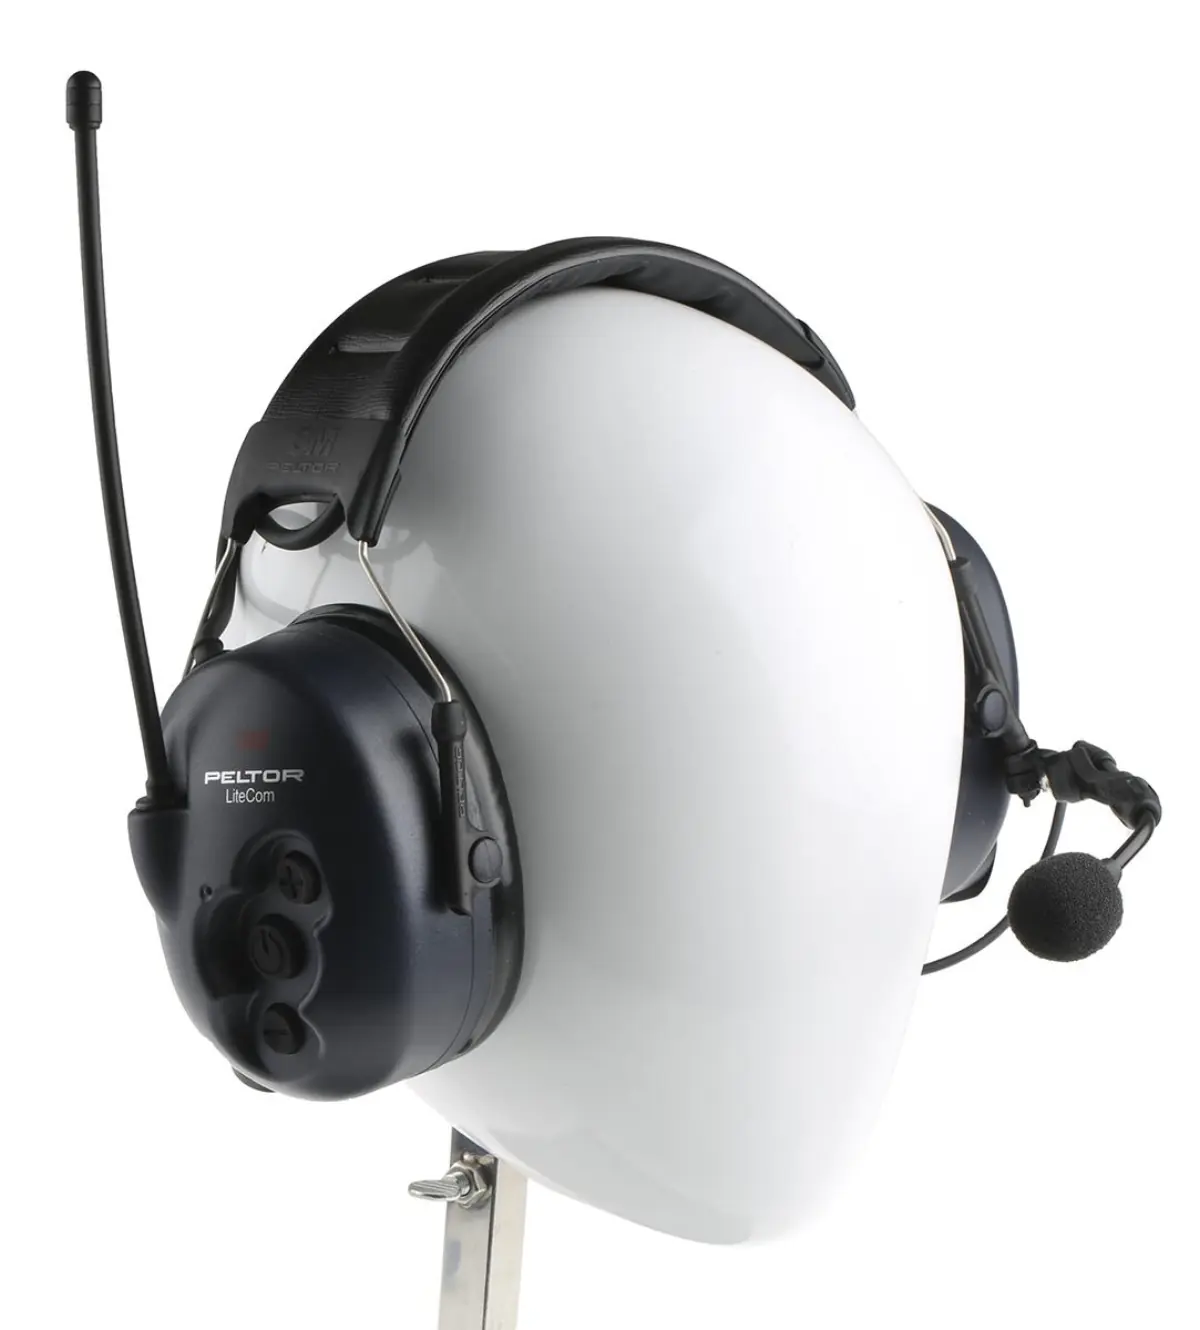 Set van 2 Peltor LiteCom - radio met oorkappen - MT53H7A4400-EU